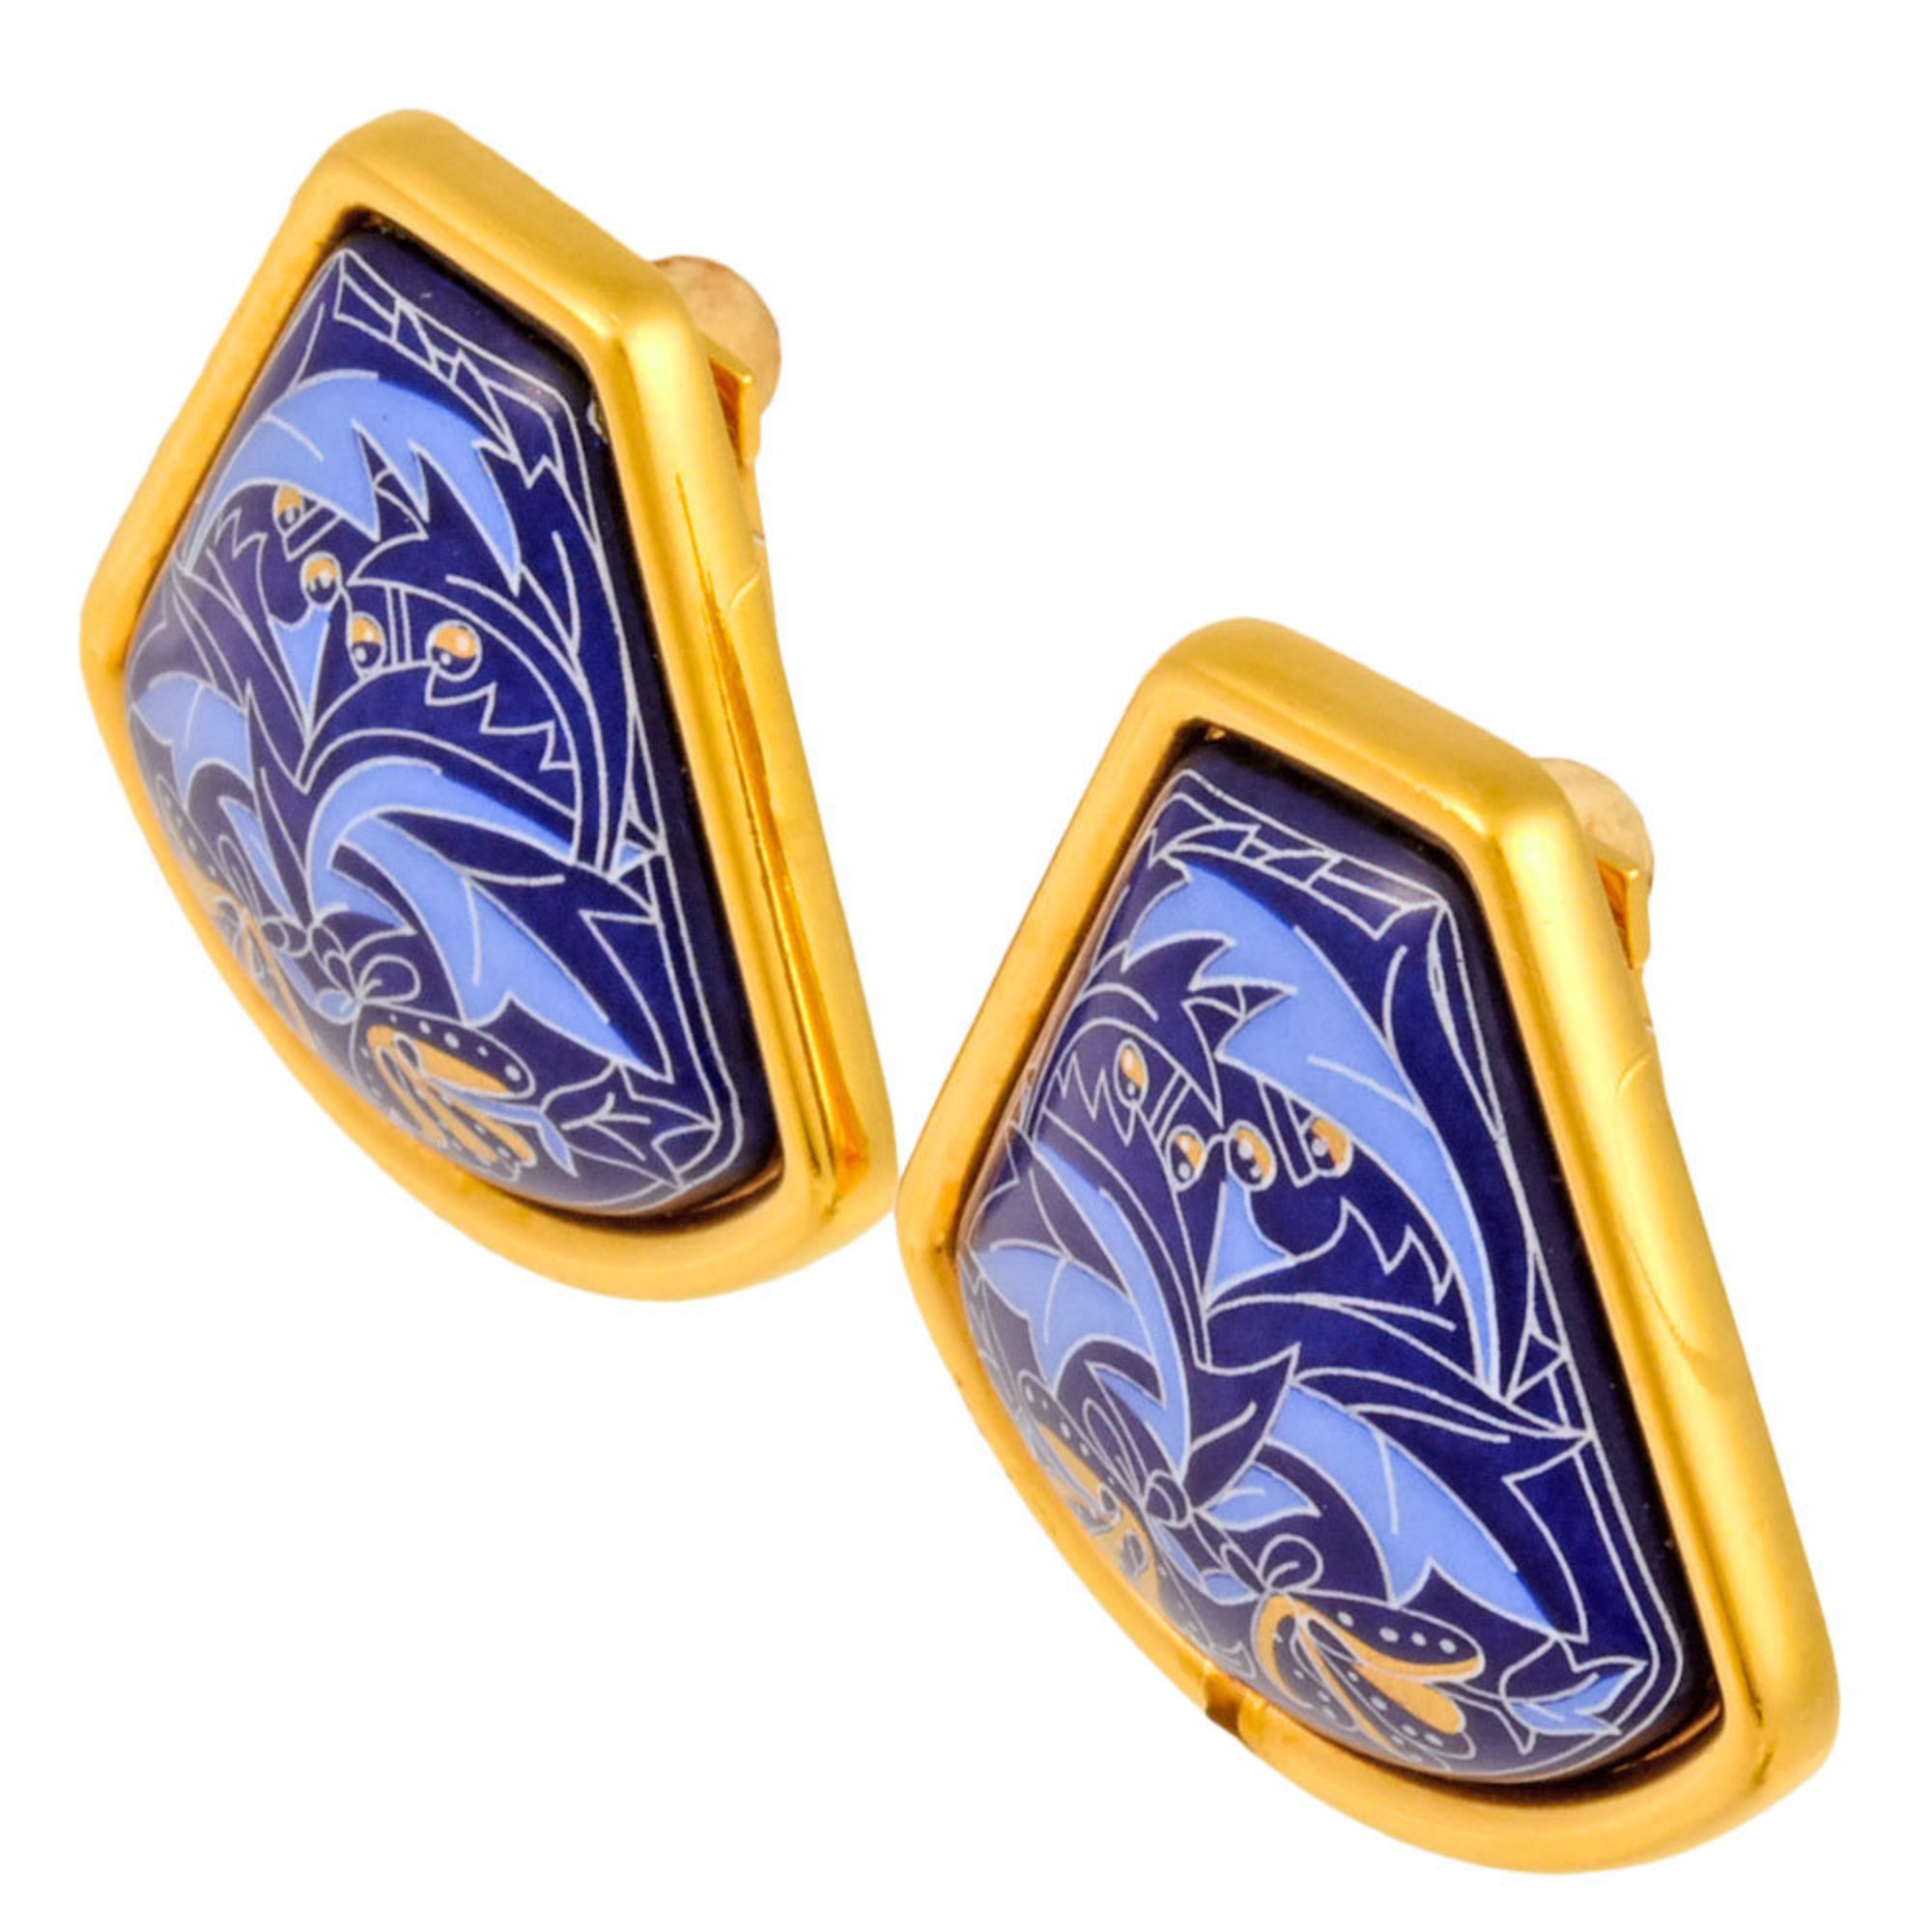 Hermes HERMES enamel cloisonne earrings blue metal